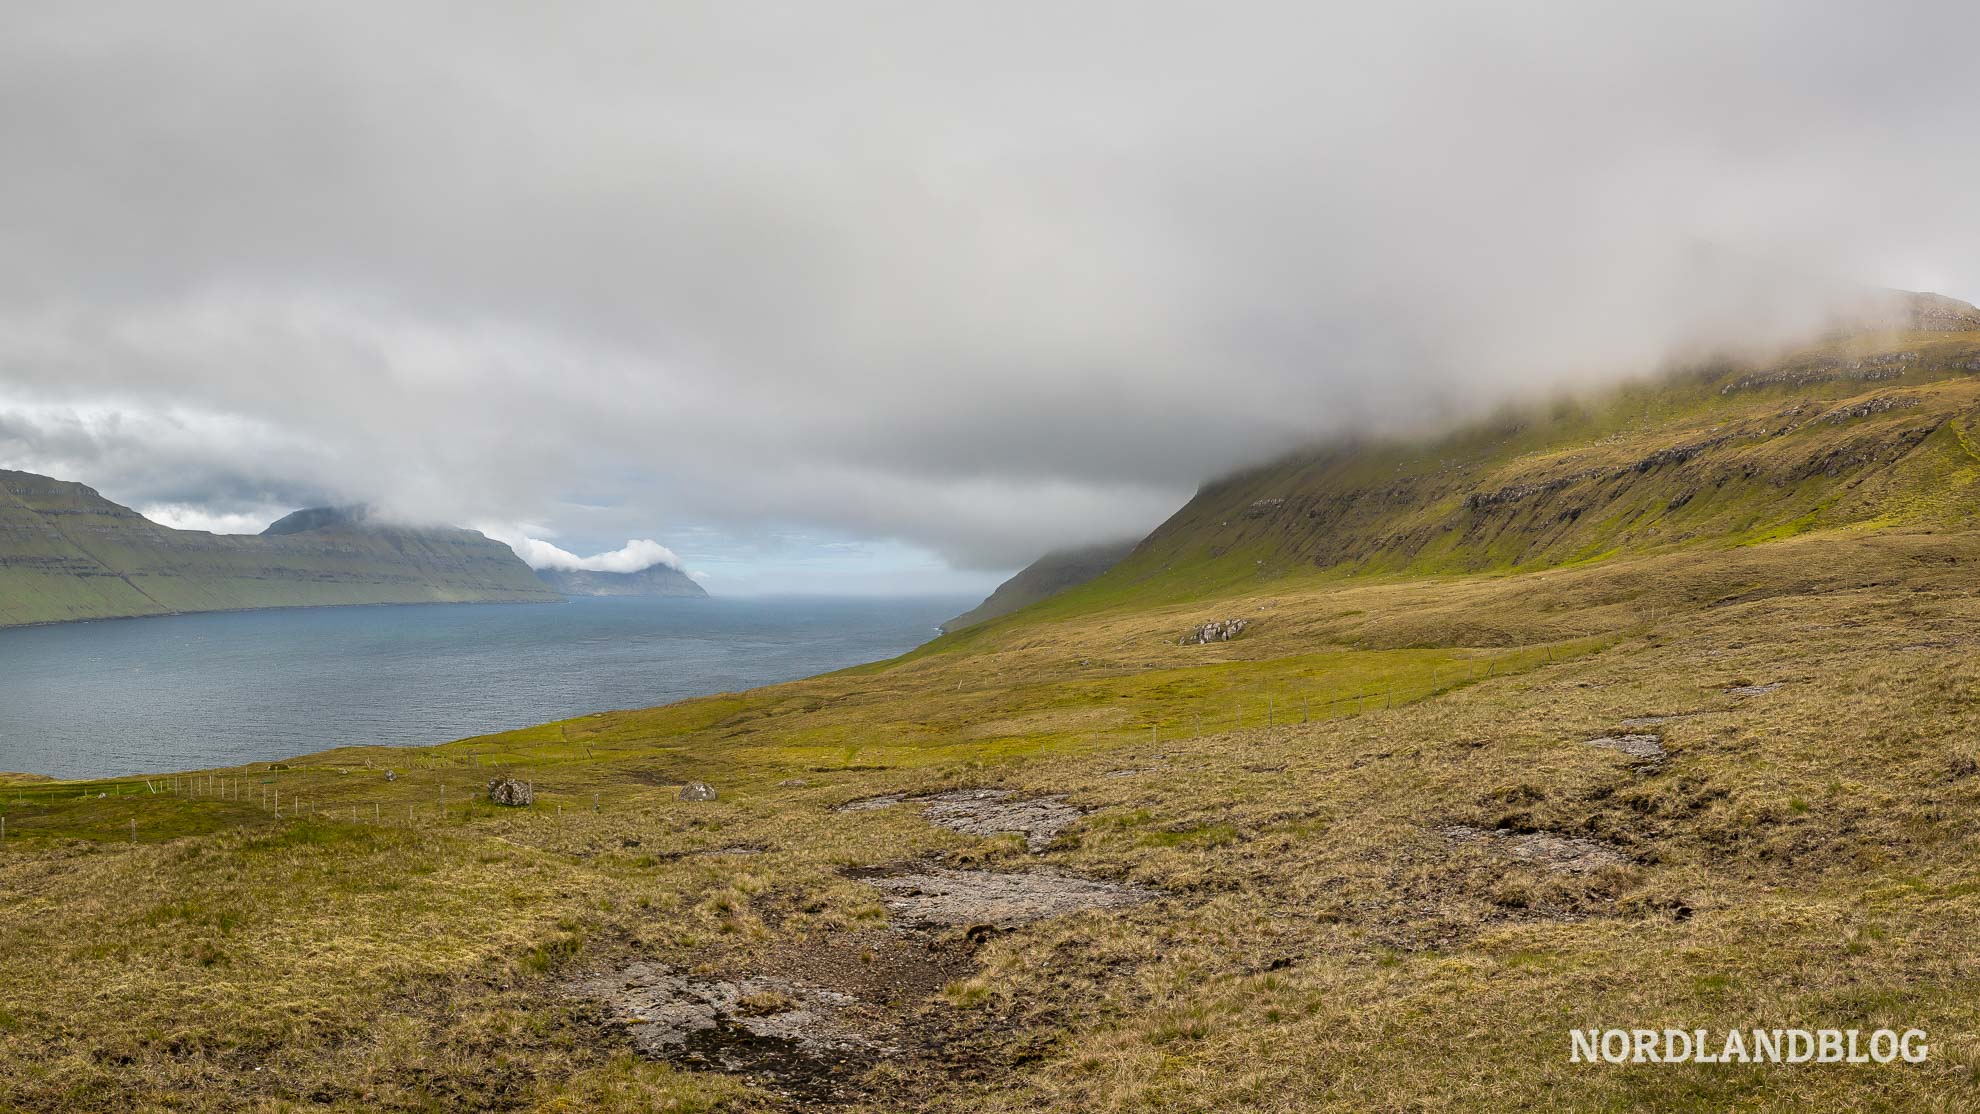 Landschaft auf der Insel Eysturoy auf den Färöer Inseln (Nordlandblog)